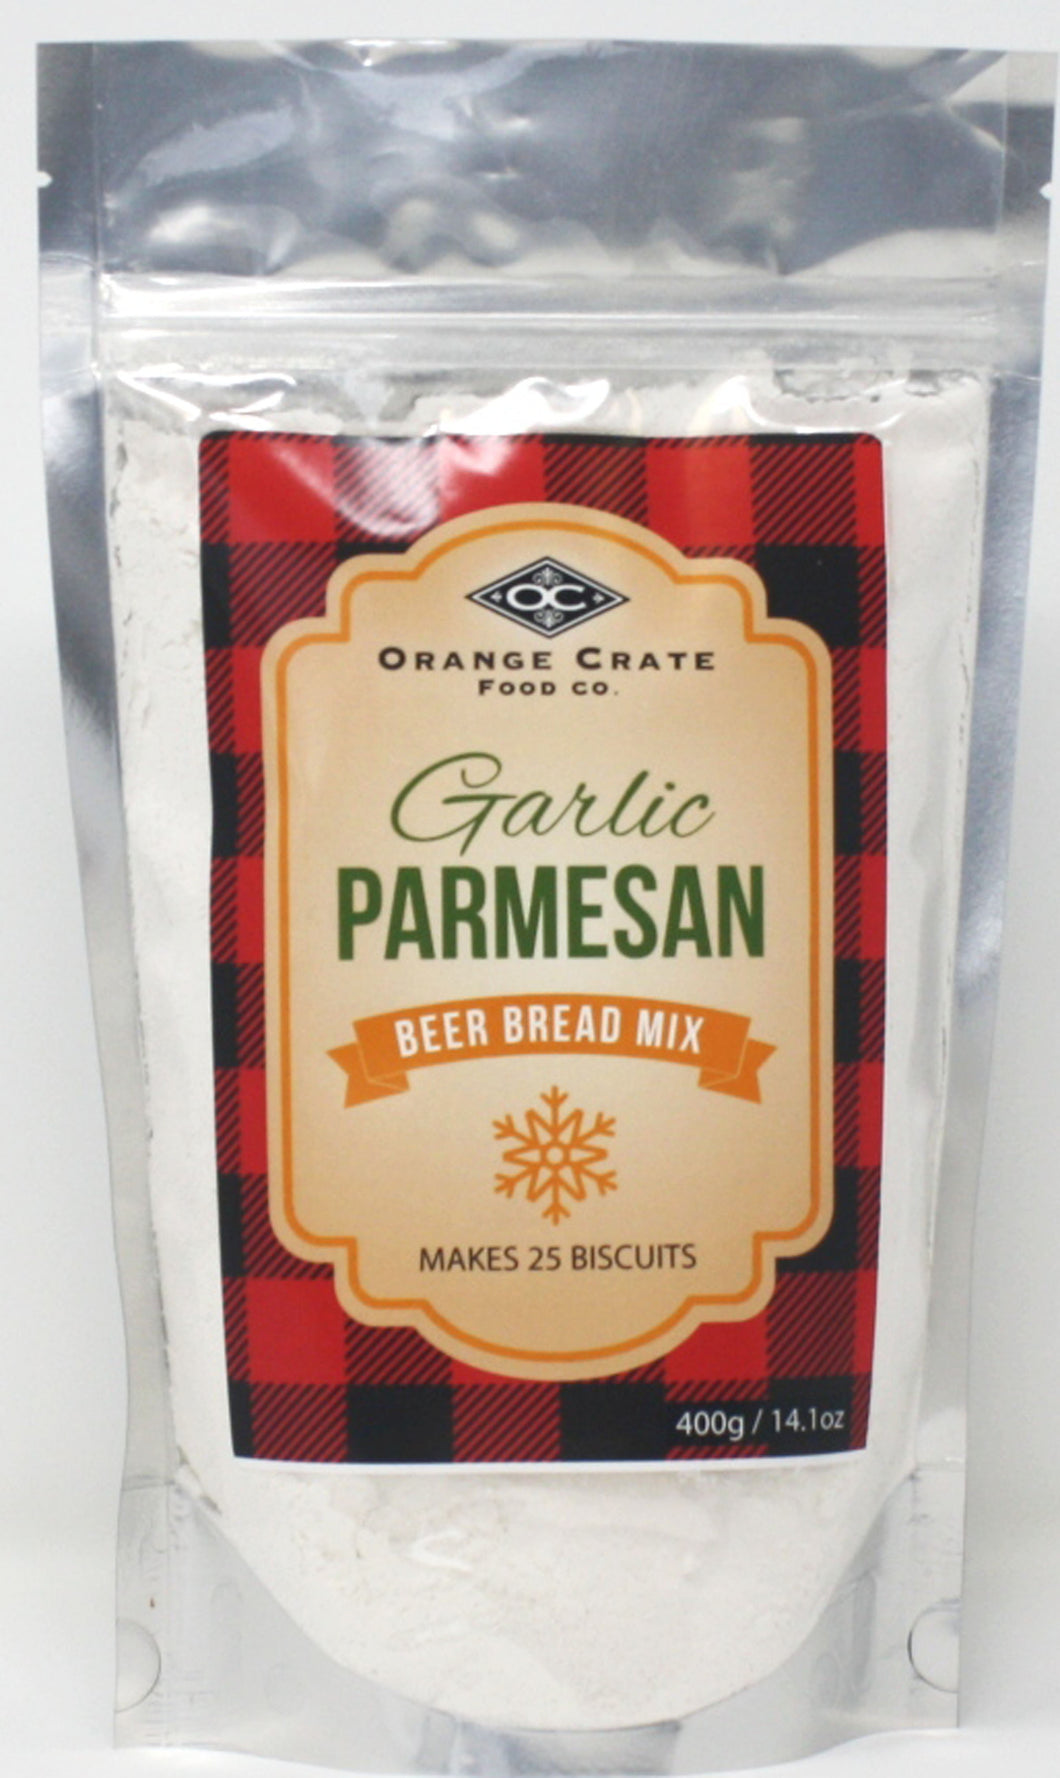 Garlic Parmesan Beer Bread